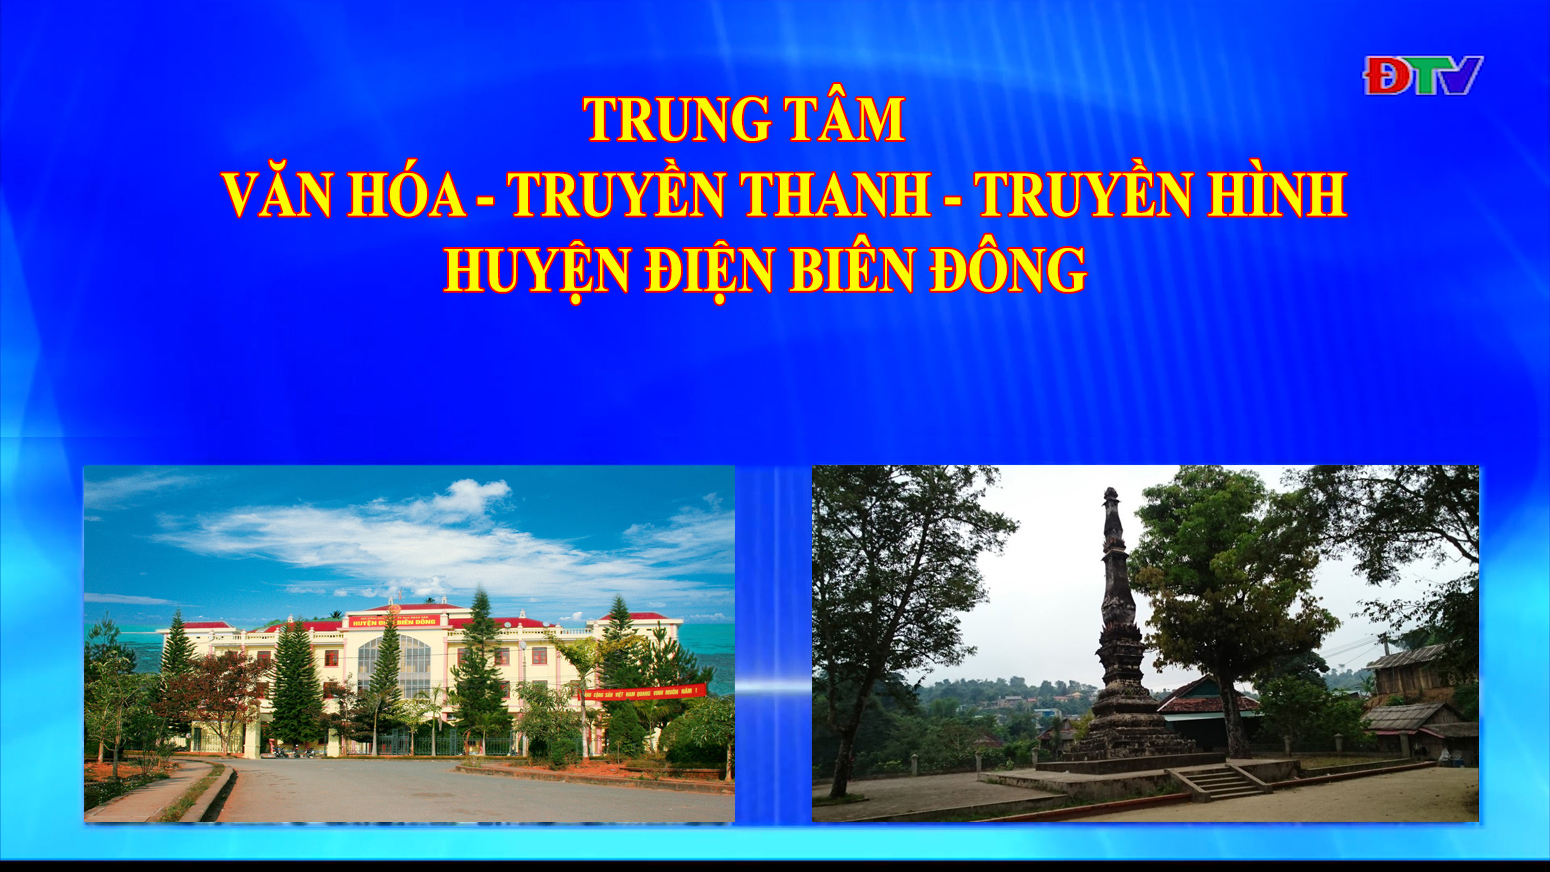 Trung tâm VH-TTTH huyện Điện Biên Đông (Ngày 20-11-2021)